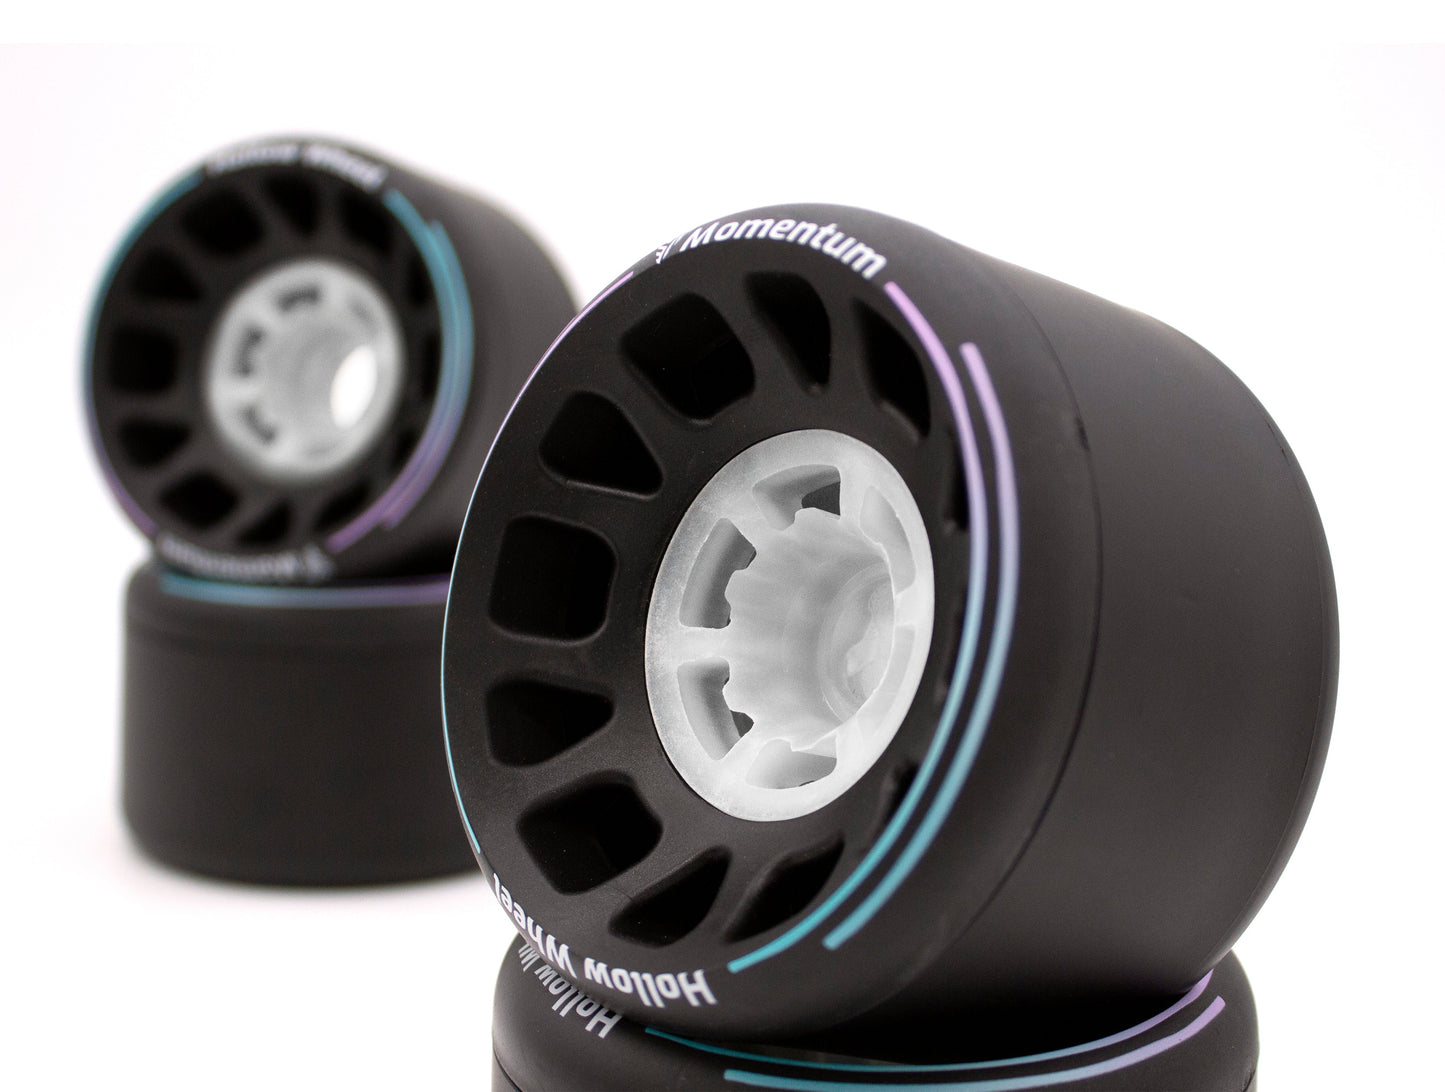 bearings in skateboard wheels